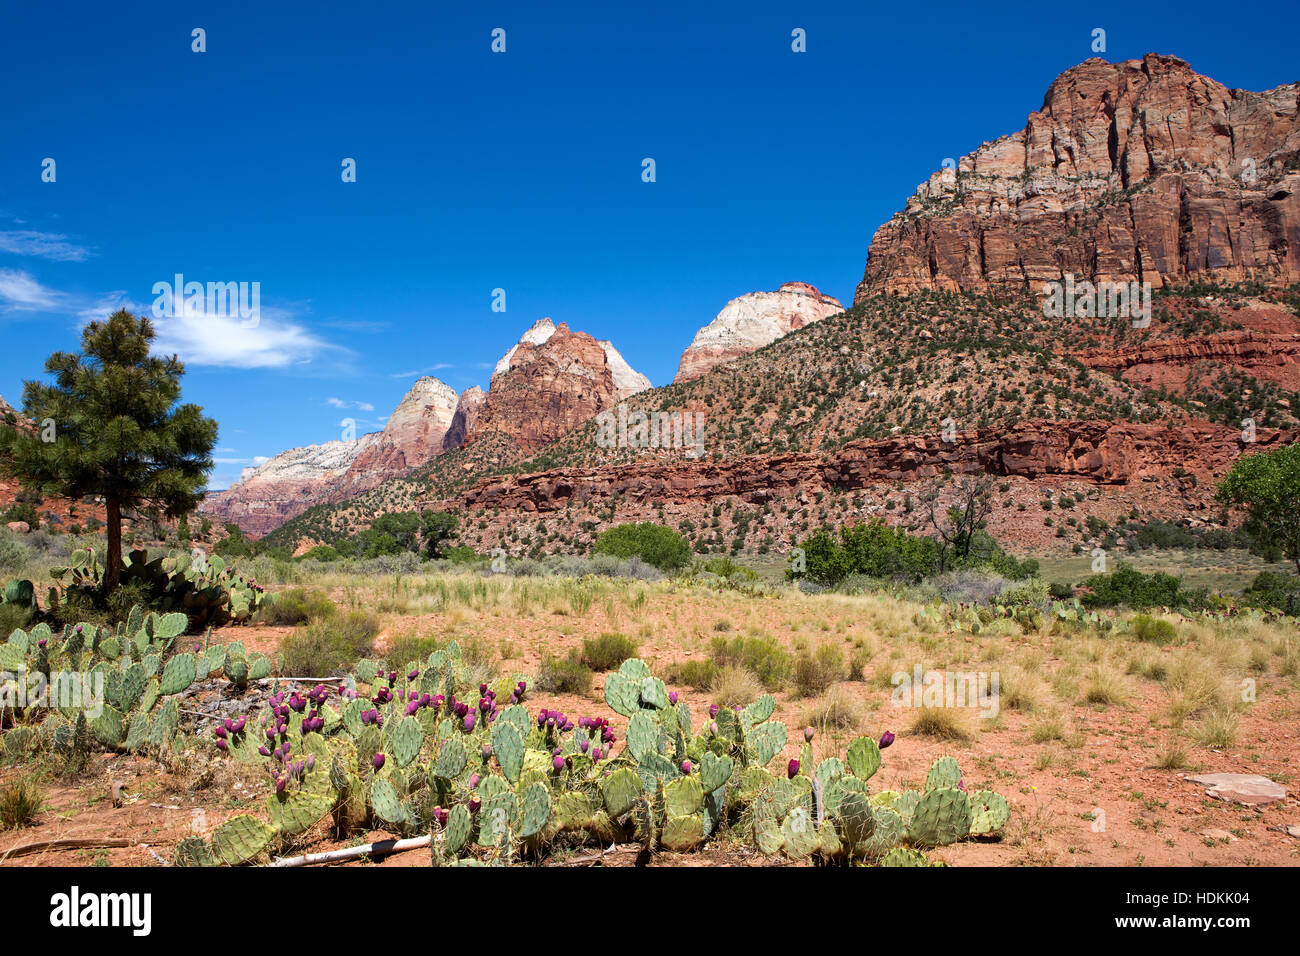 Feigenkaktus wächst in das Tal des Zion National Park, Utah, USA. Stockfoto